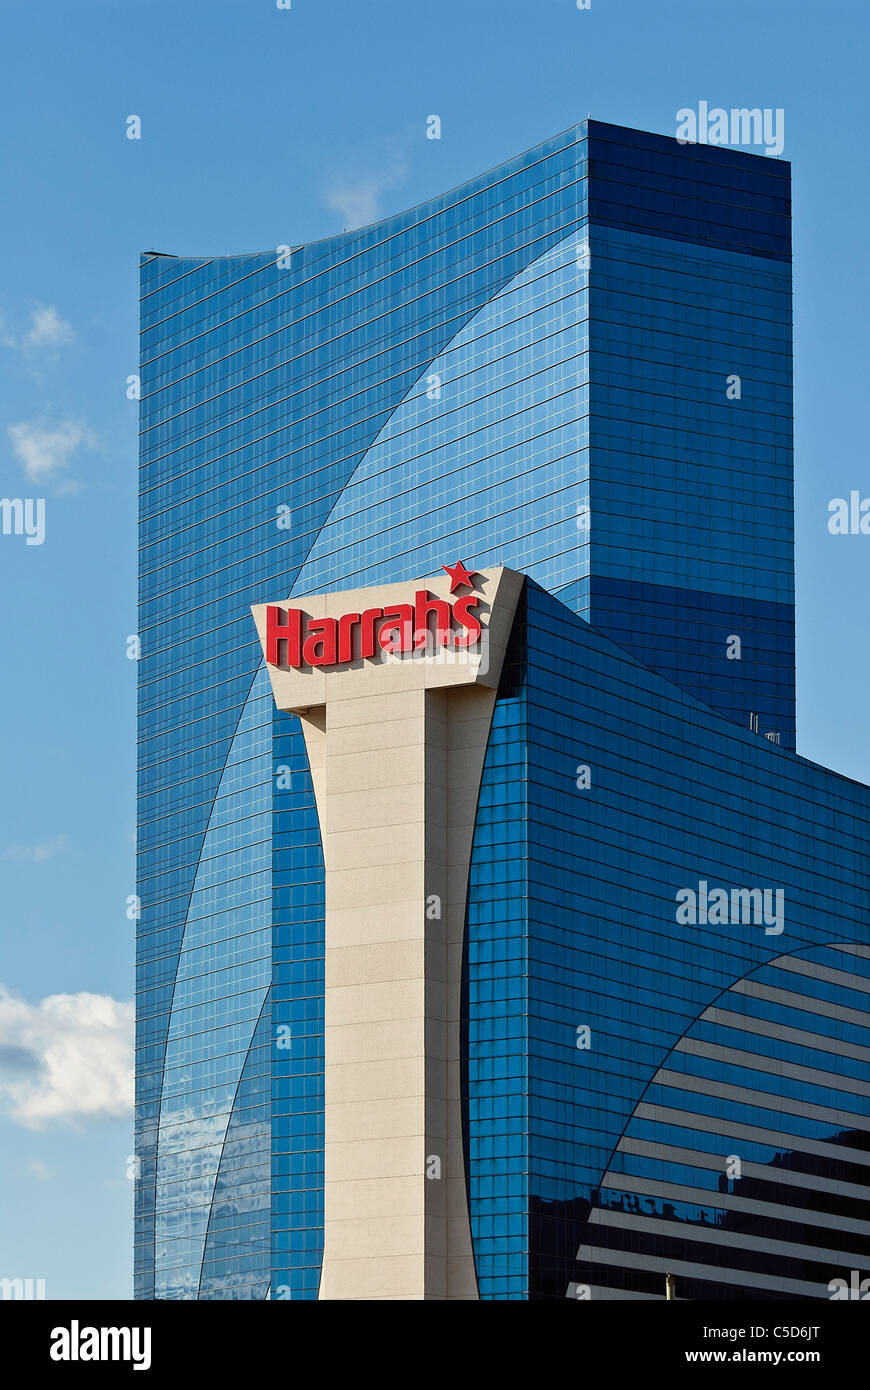 Harrahs casino, Atlantic City, New Jersey, USA Stock Photo